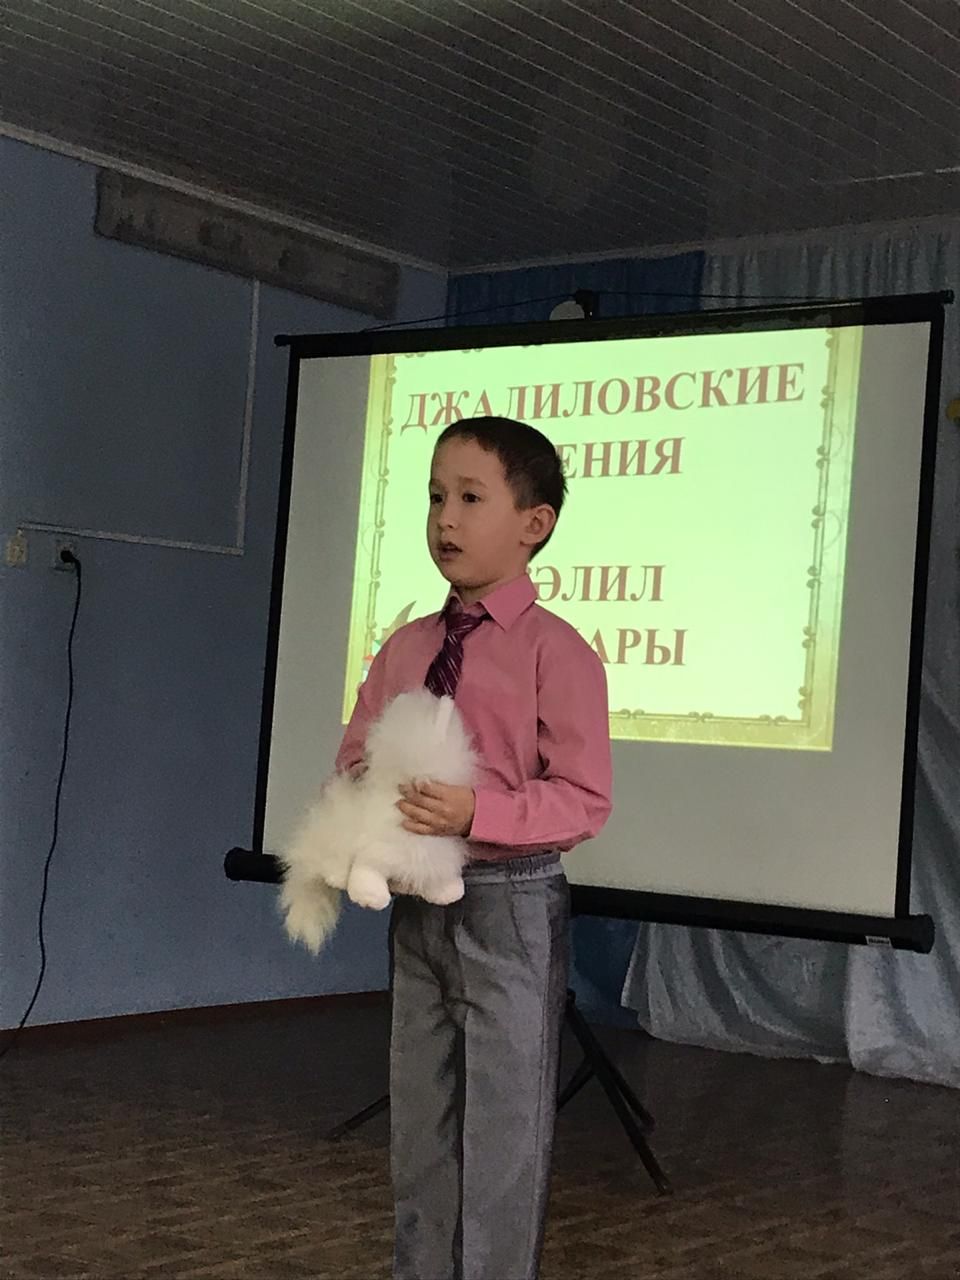 В Азнакаево прошел районный конкурс “Джалиловские чтения”